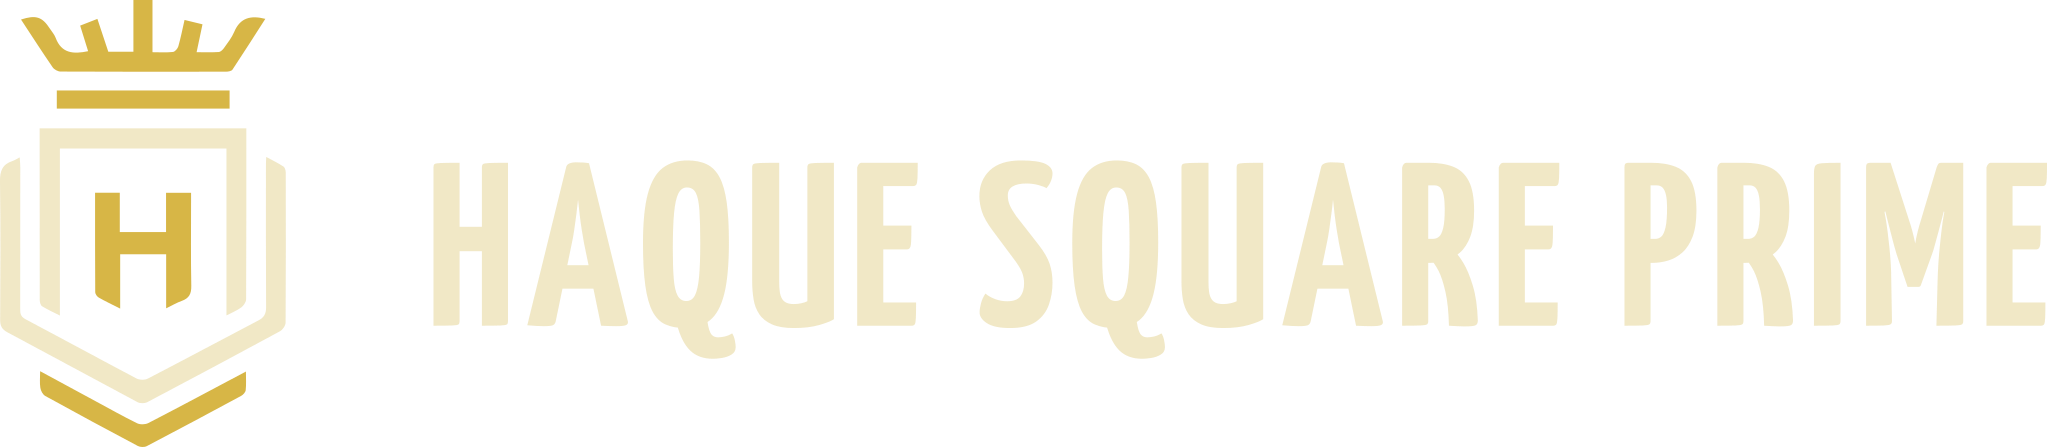 Haque Square Prime